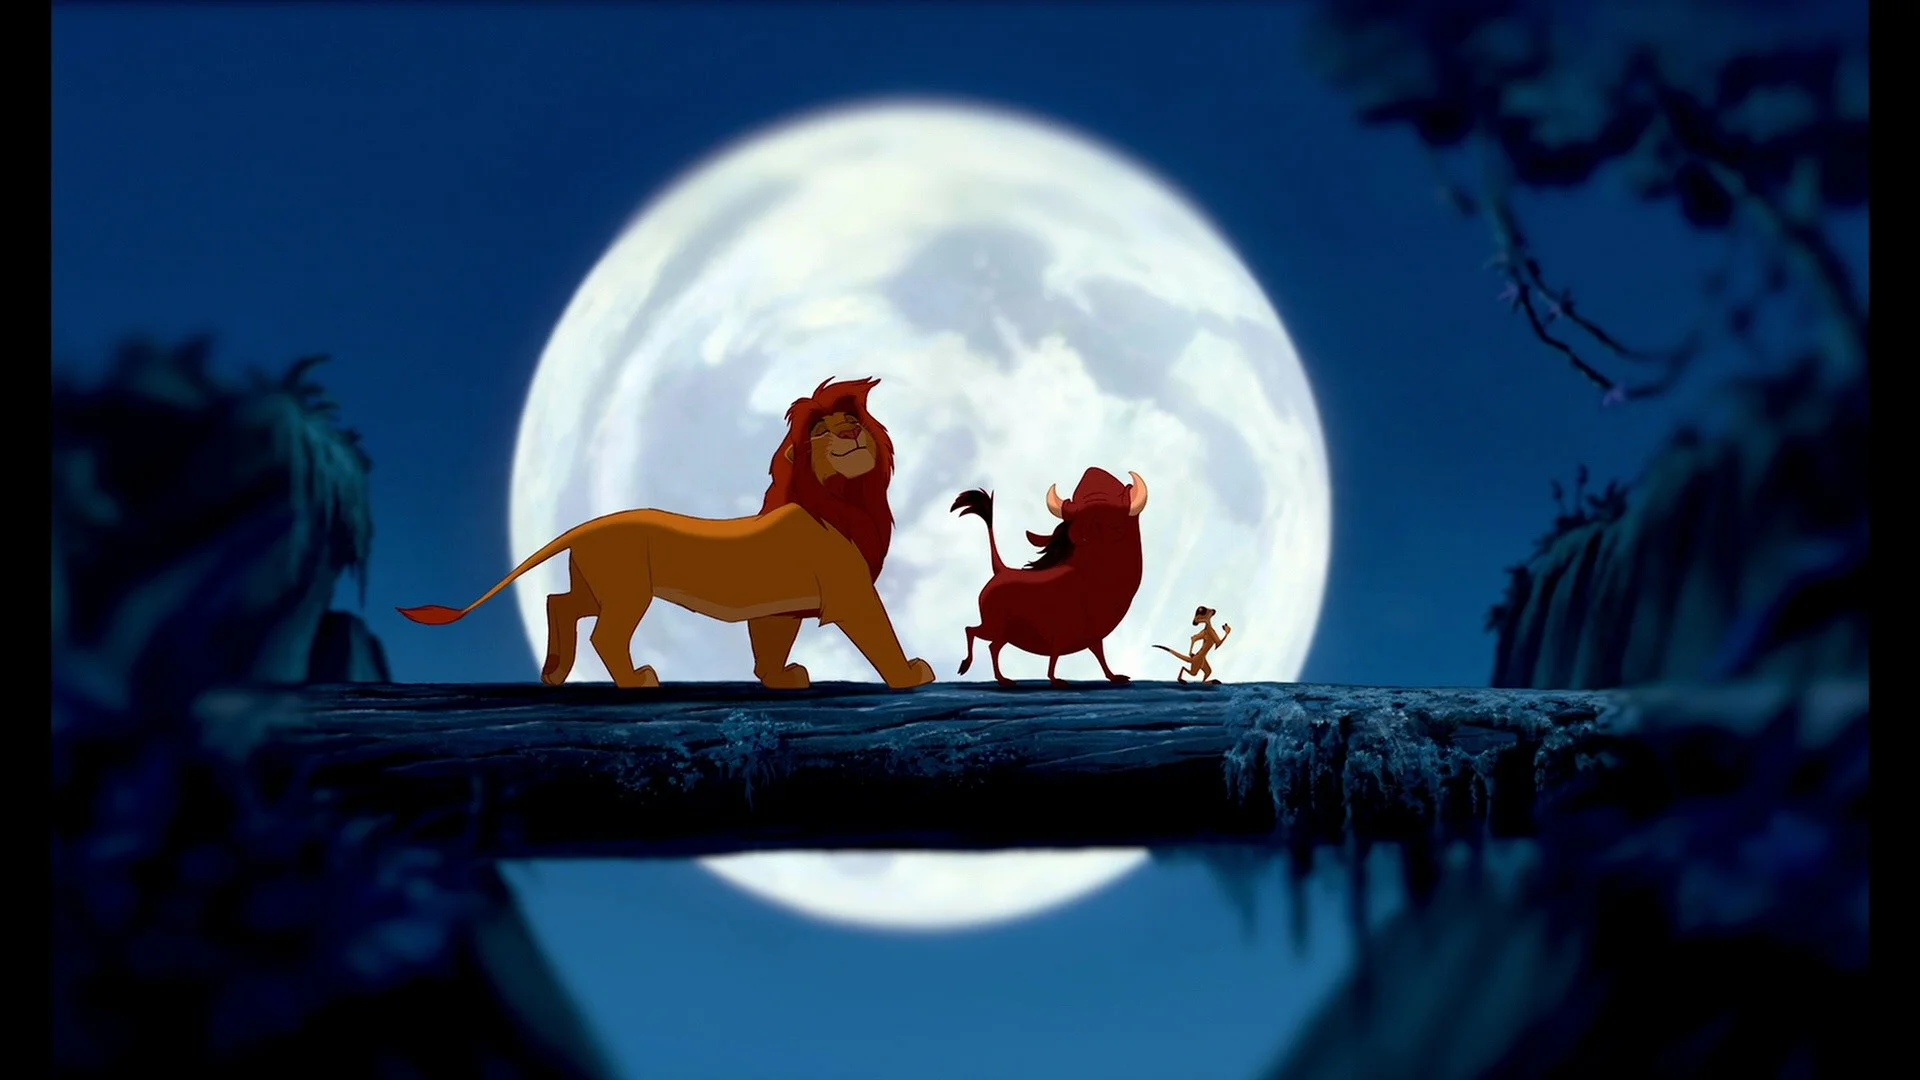 Lion King Wallpaper, Disney, HD, Widescreen, Desktop Backgrounds